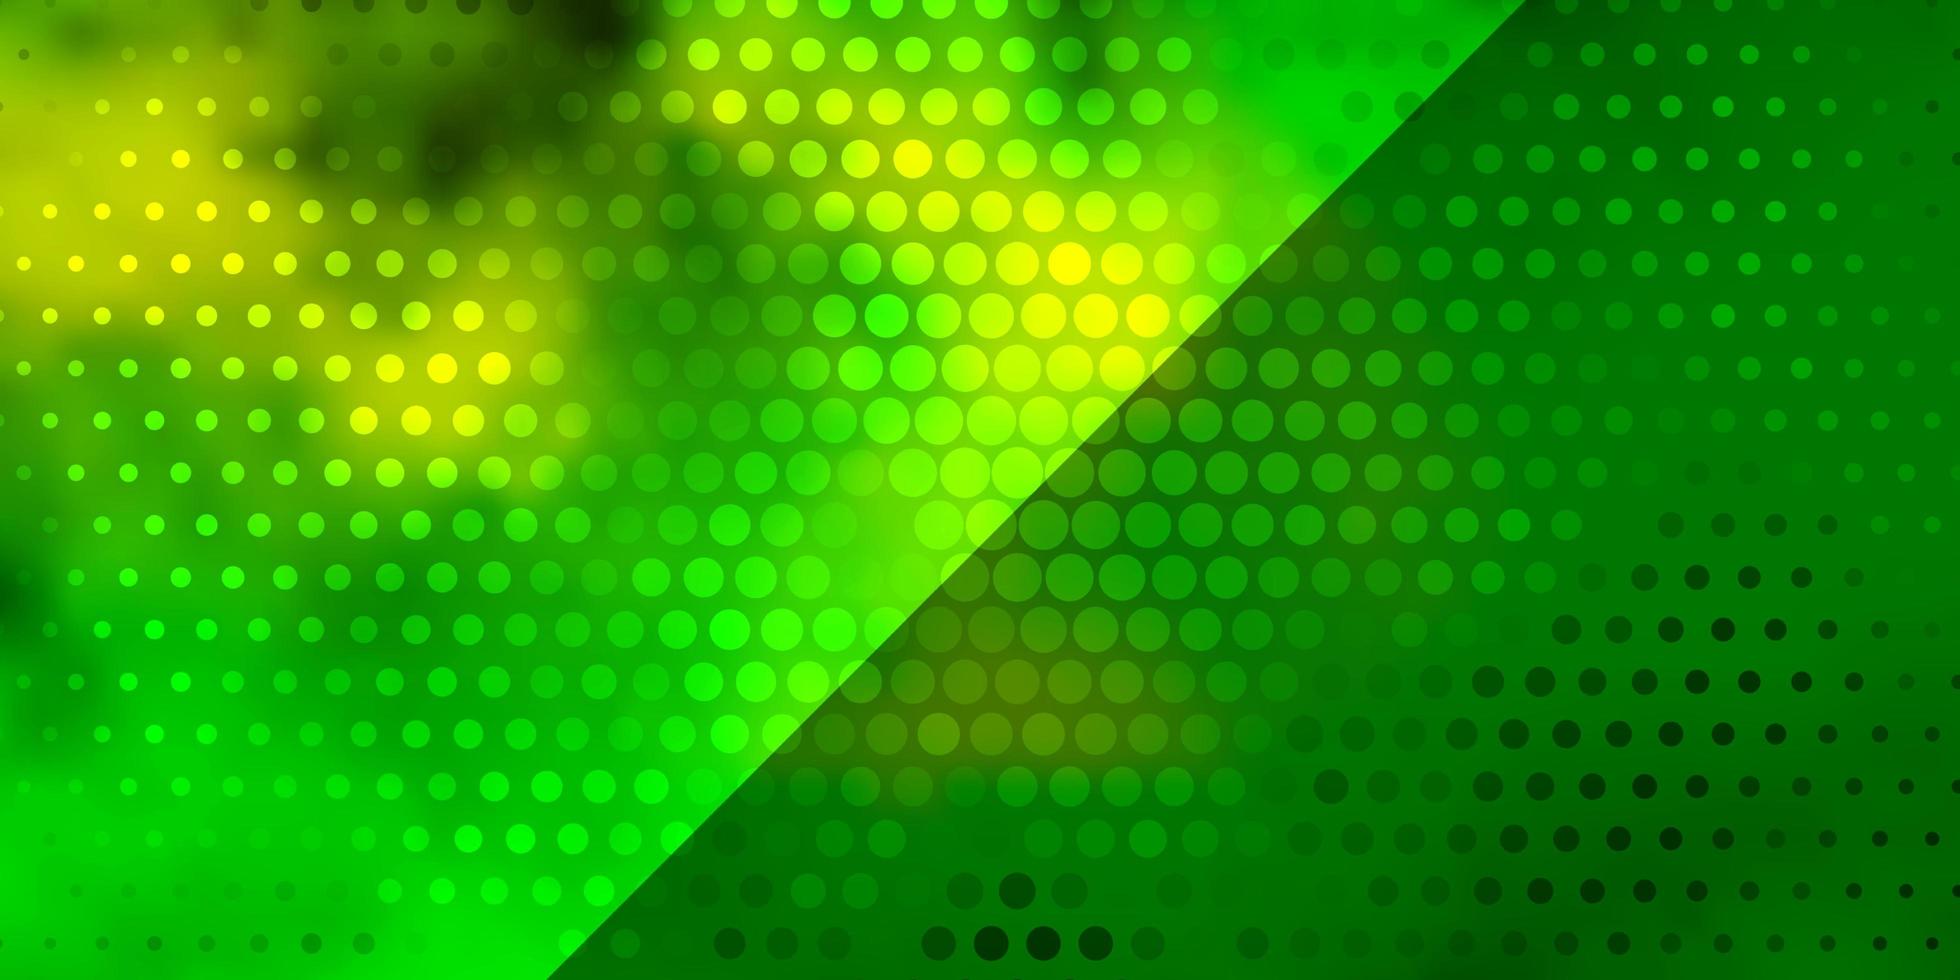 fond de vecteur vert clair, jaune avec des cercles.